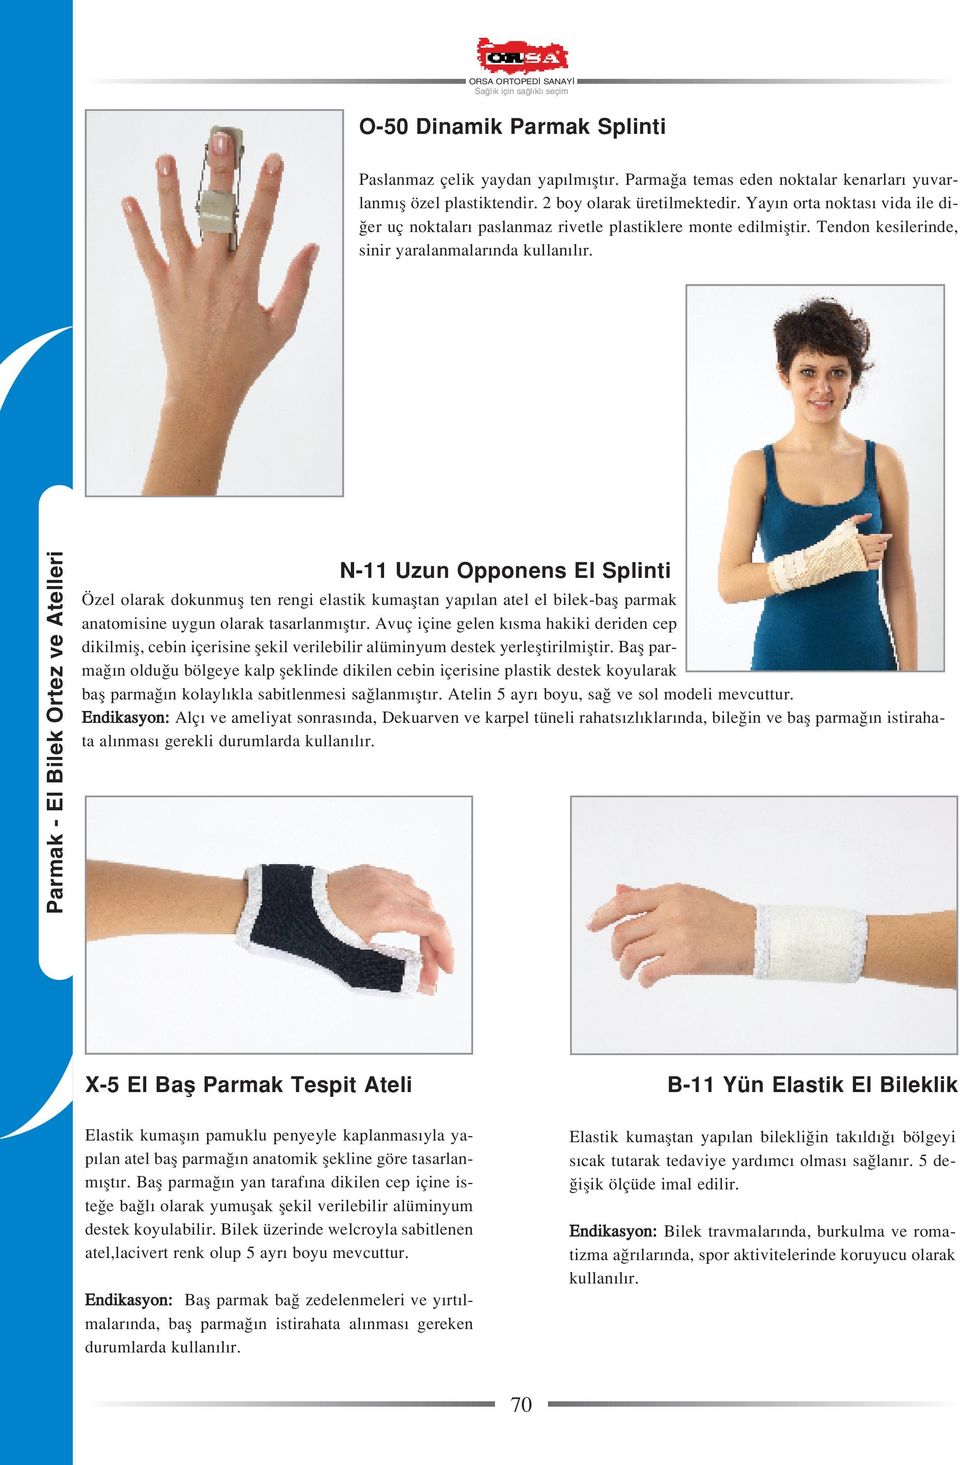 N-11 Uzun Opponens El Splinti Özel olarak dokunmufl ten rengi elastik kumafltan yap lan atel el bilek-bafl parmak anatomisine uygun olarak tasarlanm flt r.